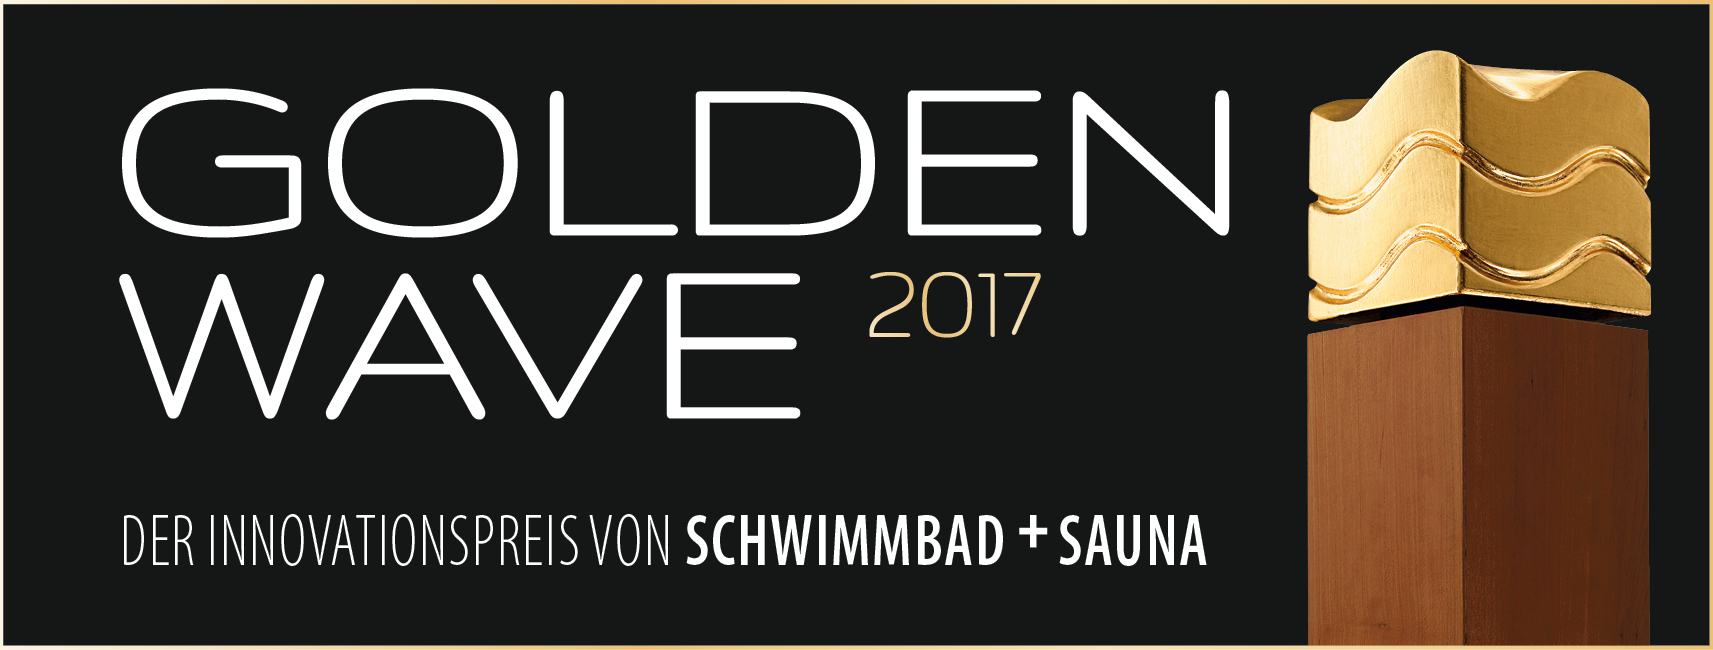 Golden Wave 2017 auf jeden Fall mit Auszeichnung für den Pool